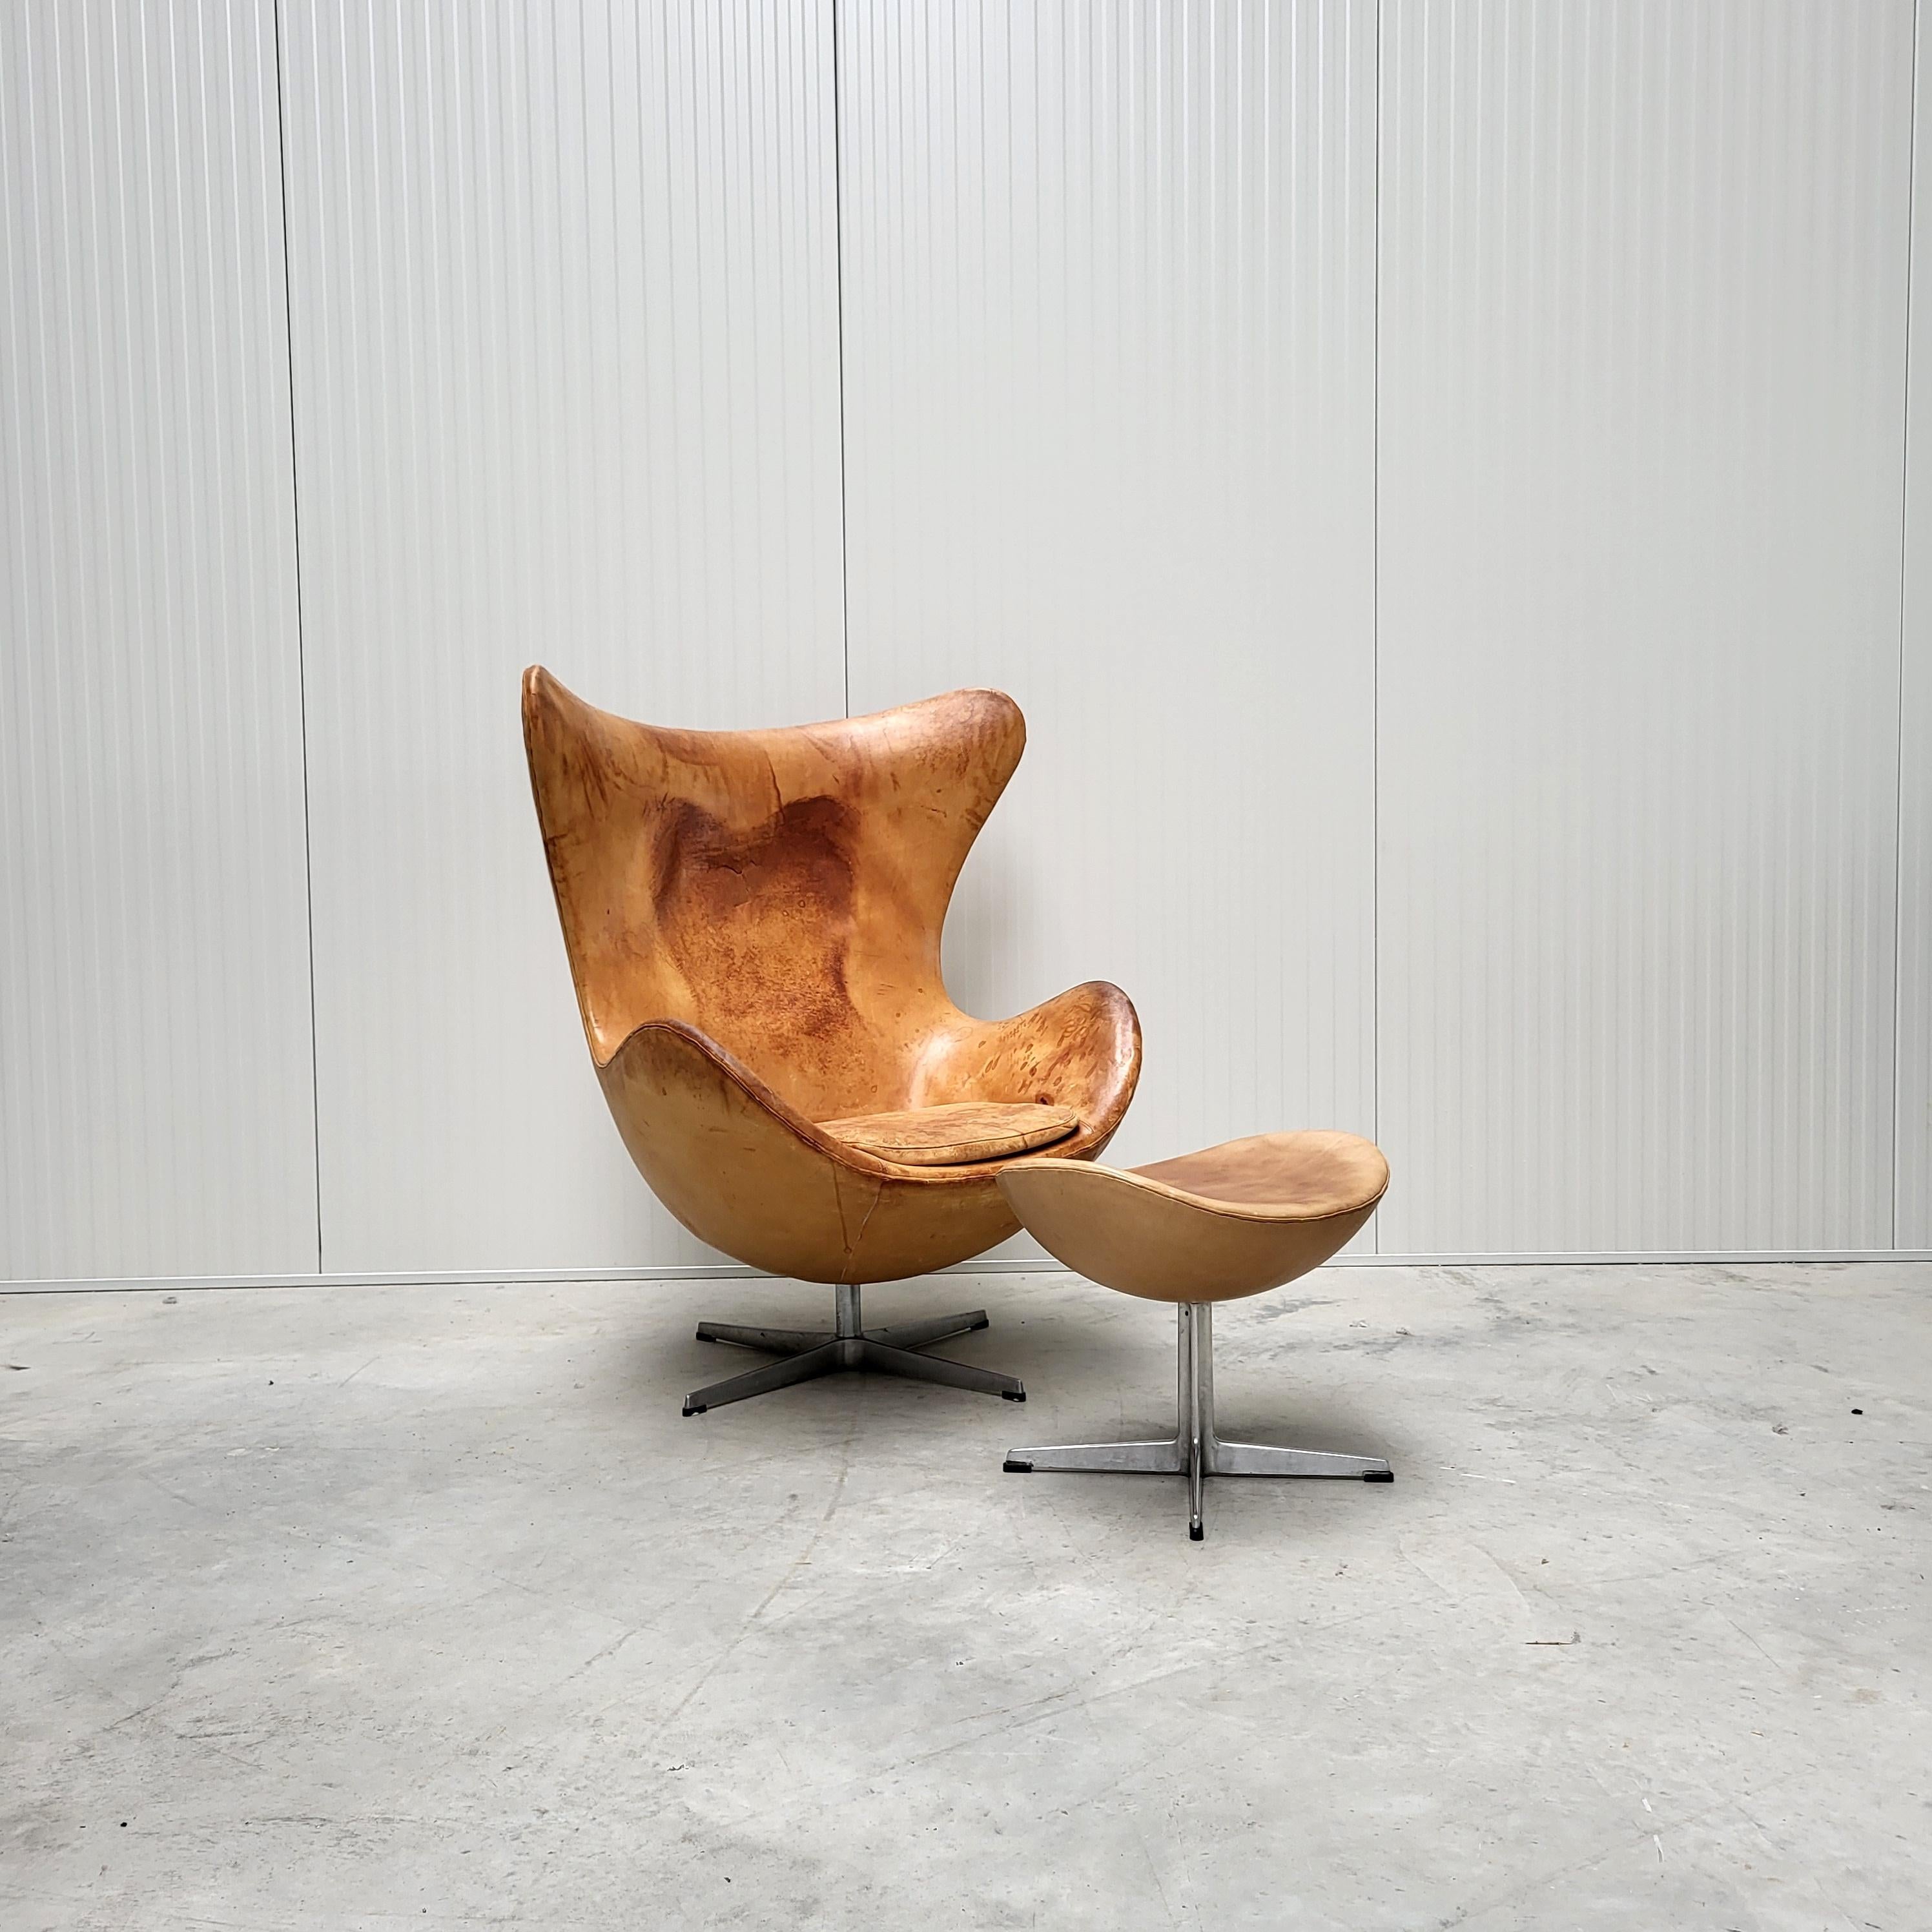 Cette très rare édition 70s de la chaise Egg et de l'ottoman a été conçue dans les années 50 par Arne Jacobsen pour l'hôtel SAS à Copenhague et produite par Fritz Hansen vers 1979/1980. Le fauteuil Egg est revêtu d'un cuir semi-aniline très fin.

La